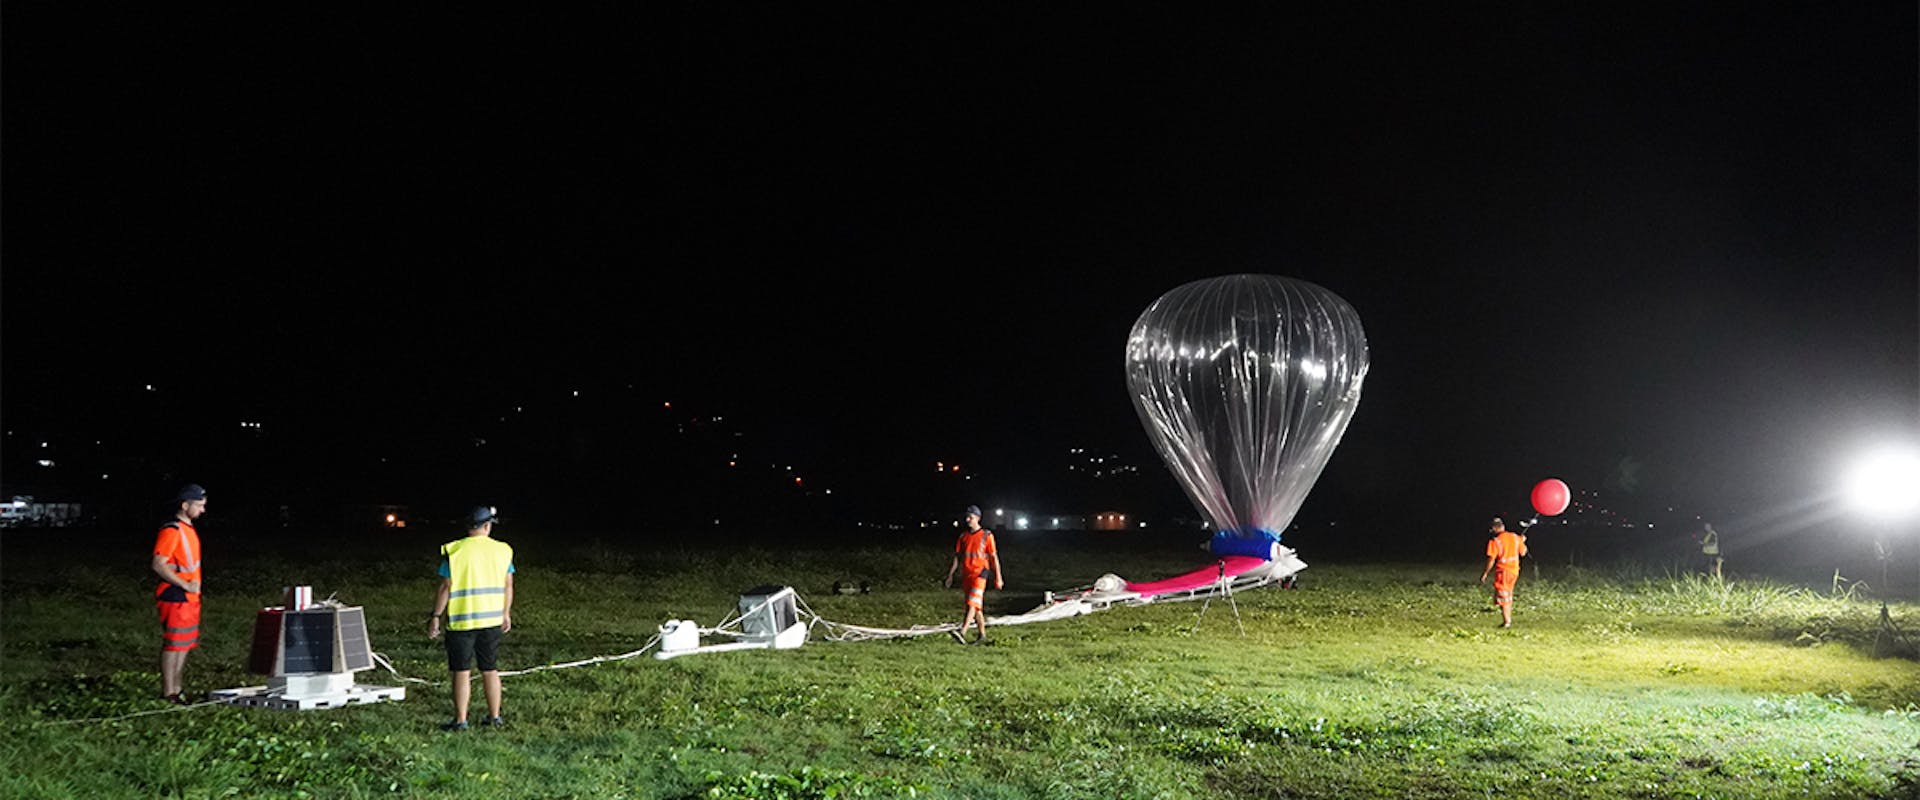 High-altitude balloons